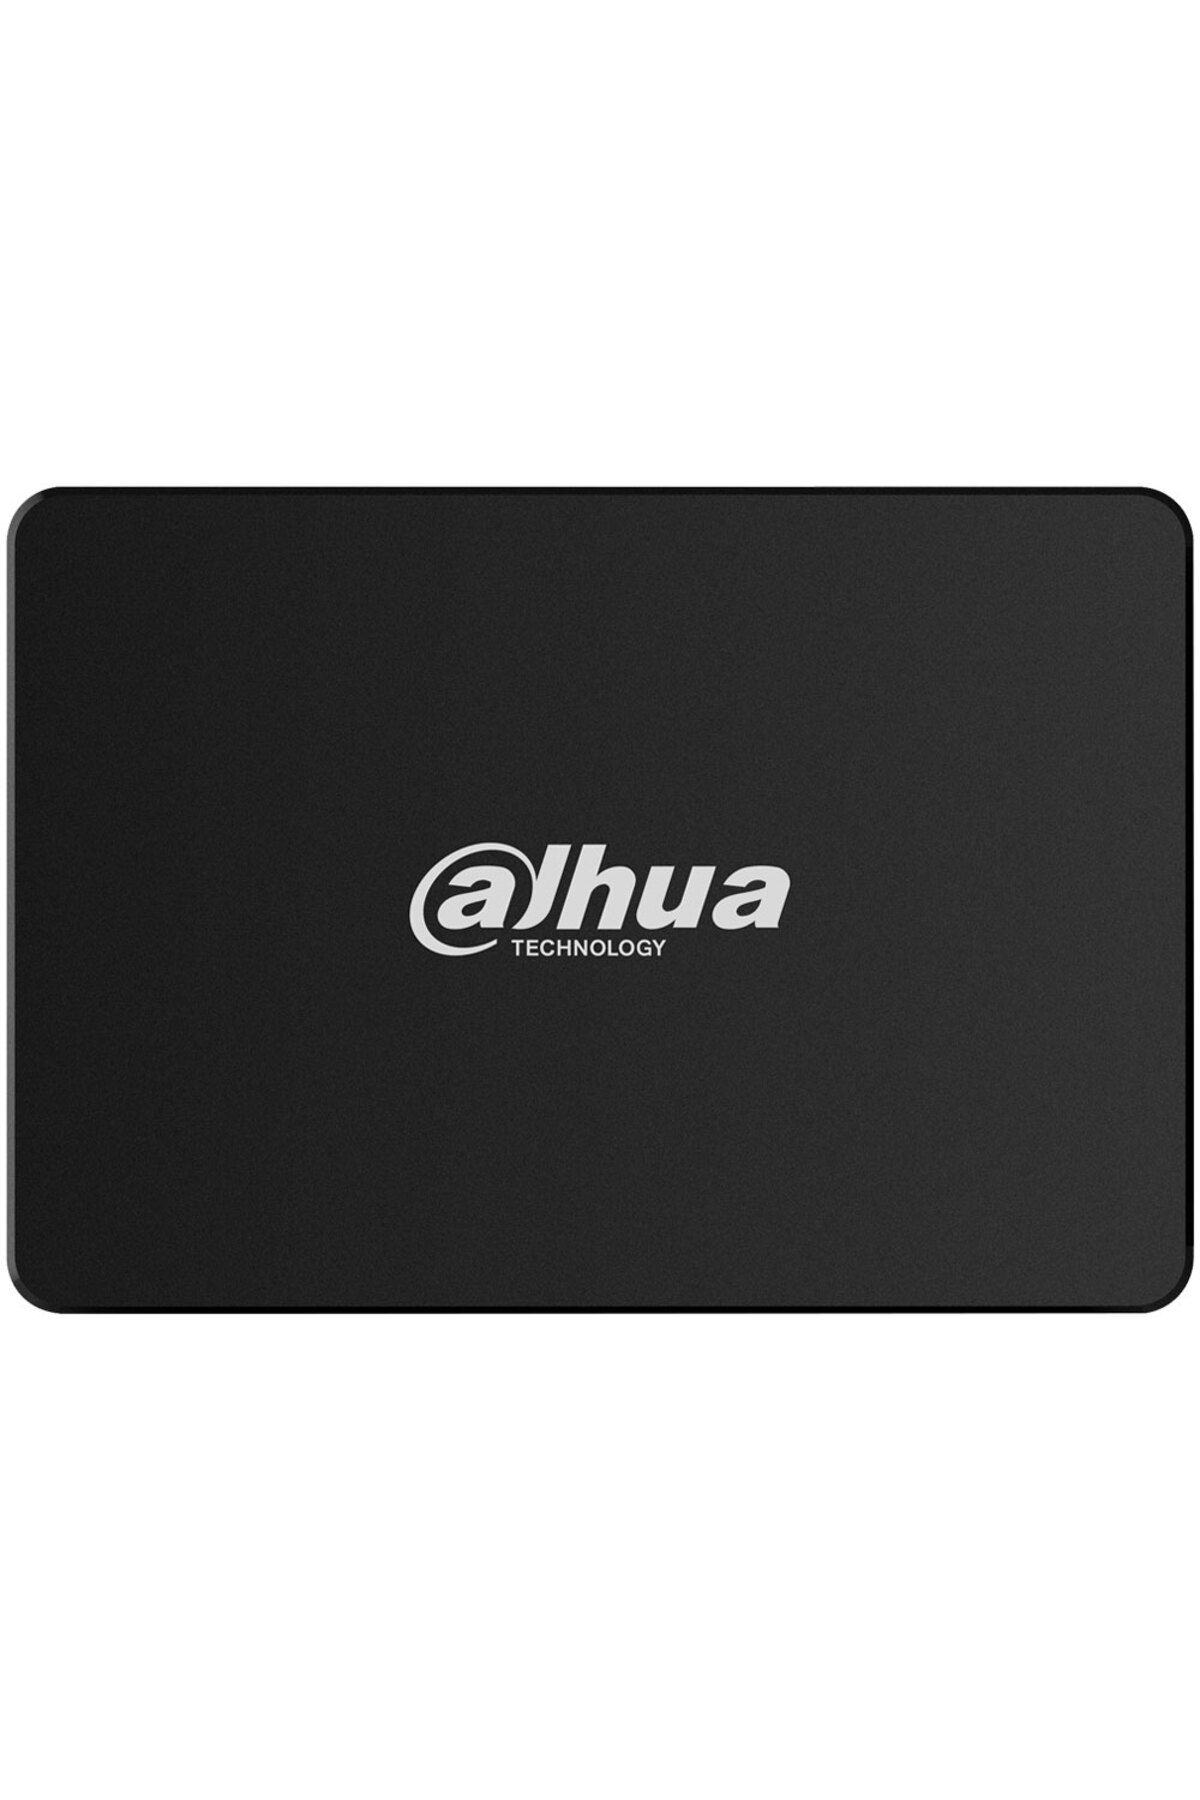 Dahua E800 256GB 550/470MBs SATA 3.0 SSD SSD-E800S256G